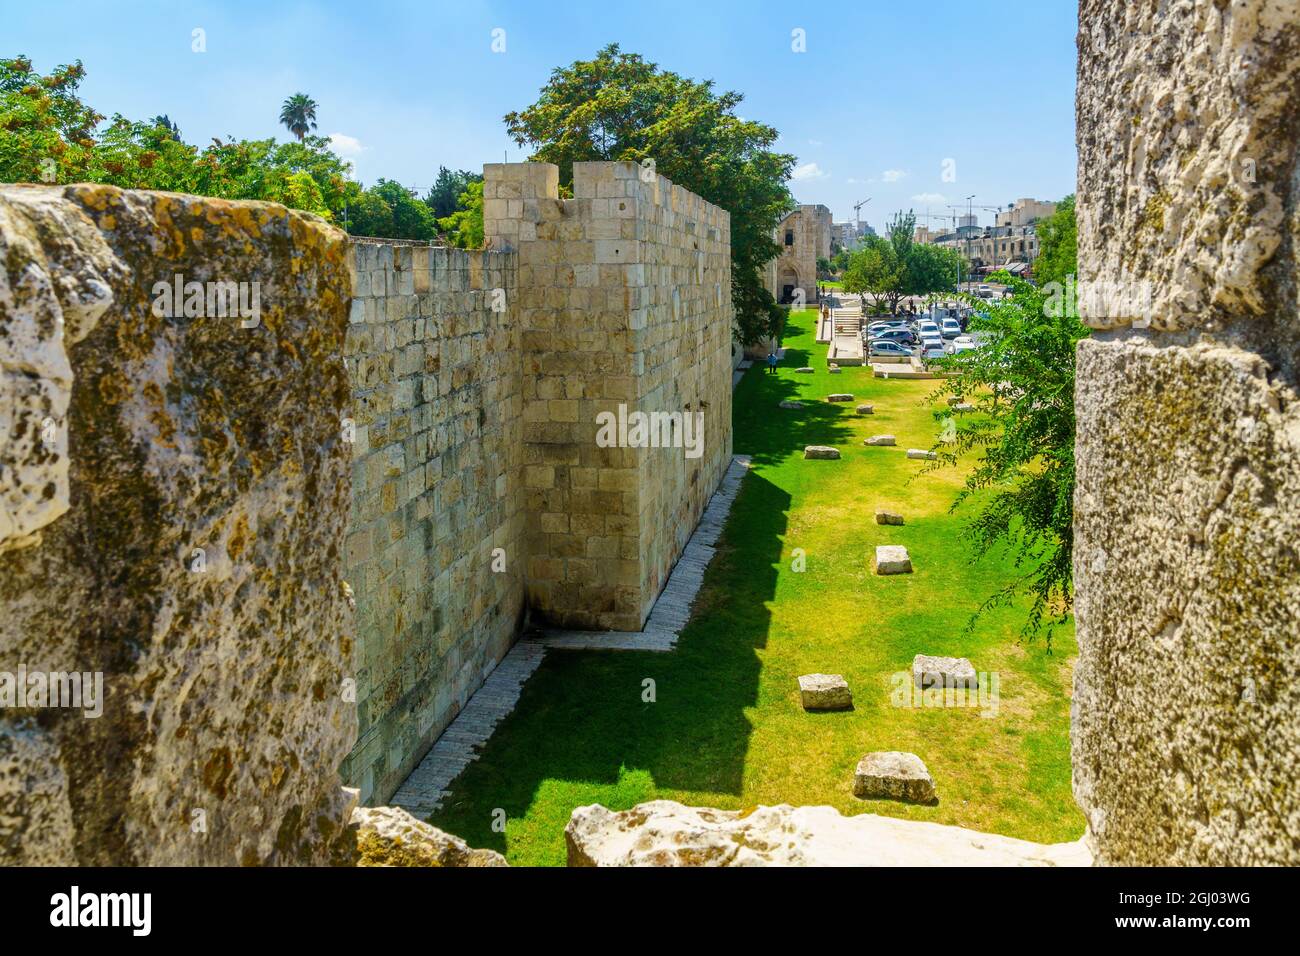 Jerusalén, Israel - 30 de agosto de 2021: Vista del paseo marítimo de las murallas de la Ciudad Vieja, y la Puerta de Herodes (Puerta de las Flores), con peatones, en Jerusalén, ISR Foto de stock